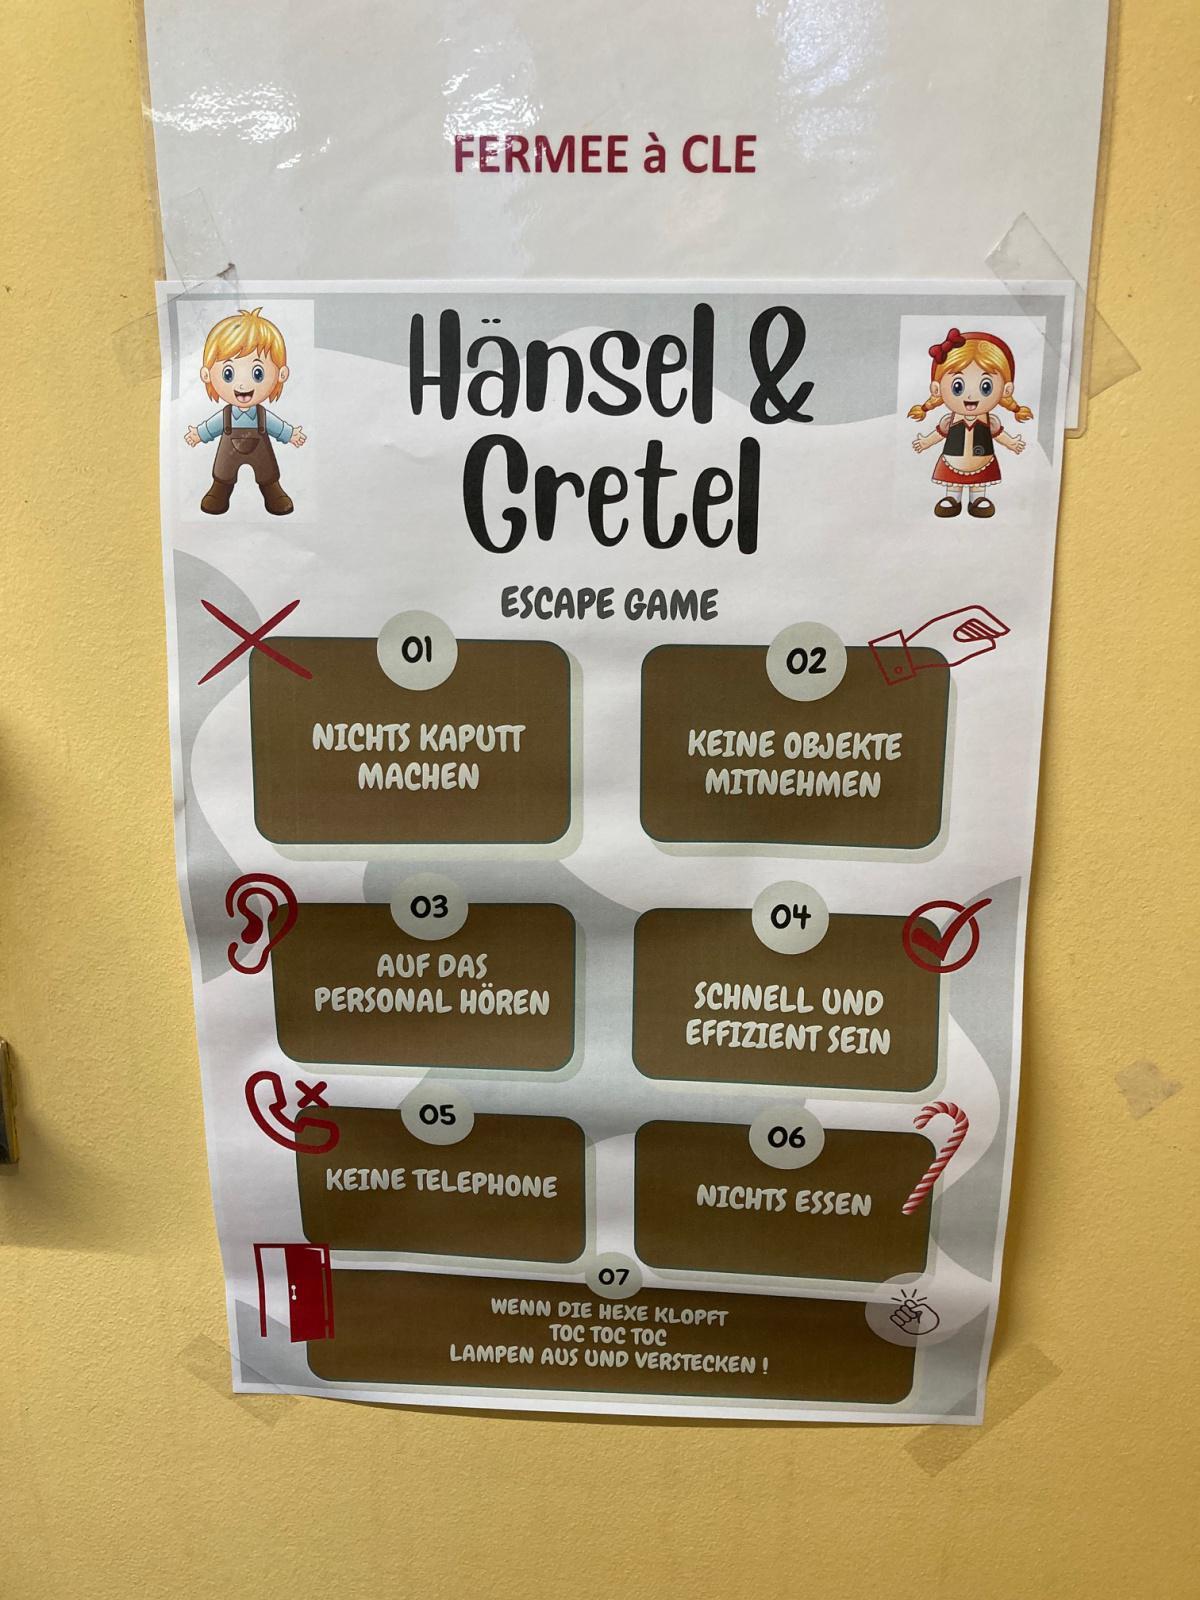 Hänsel und Gretel - un nouvel escape game allemand à Barthou !